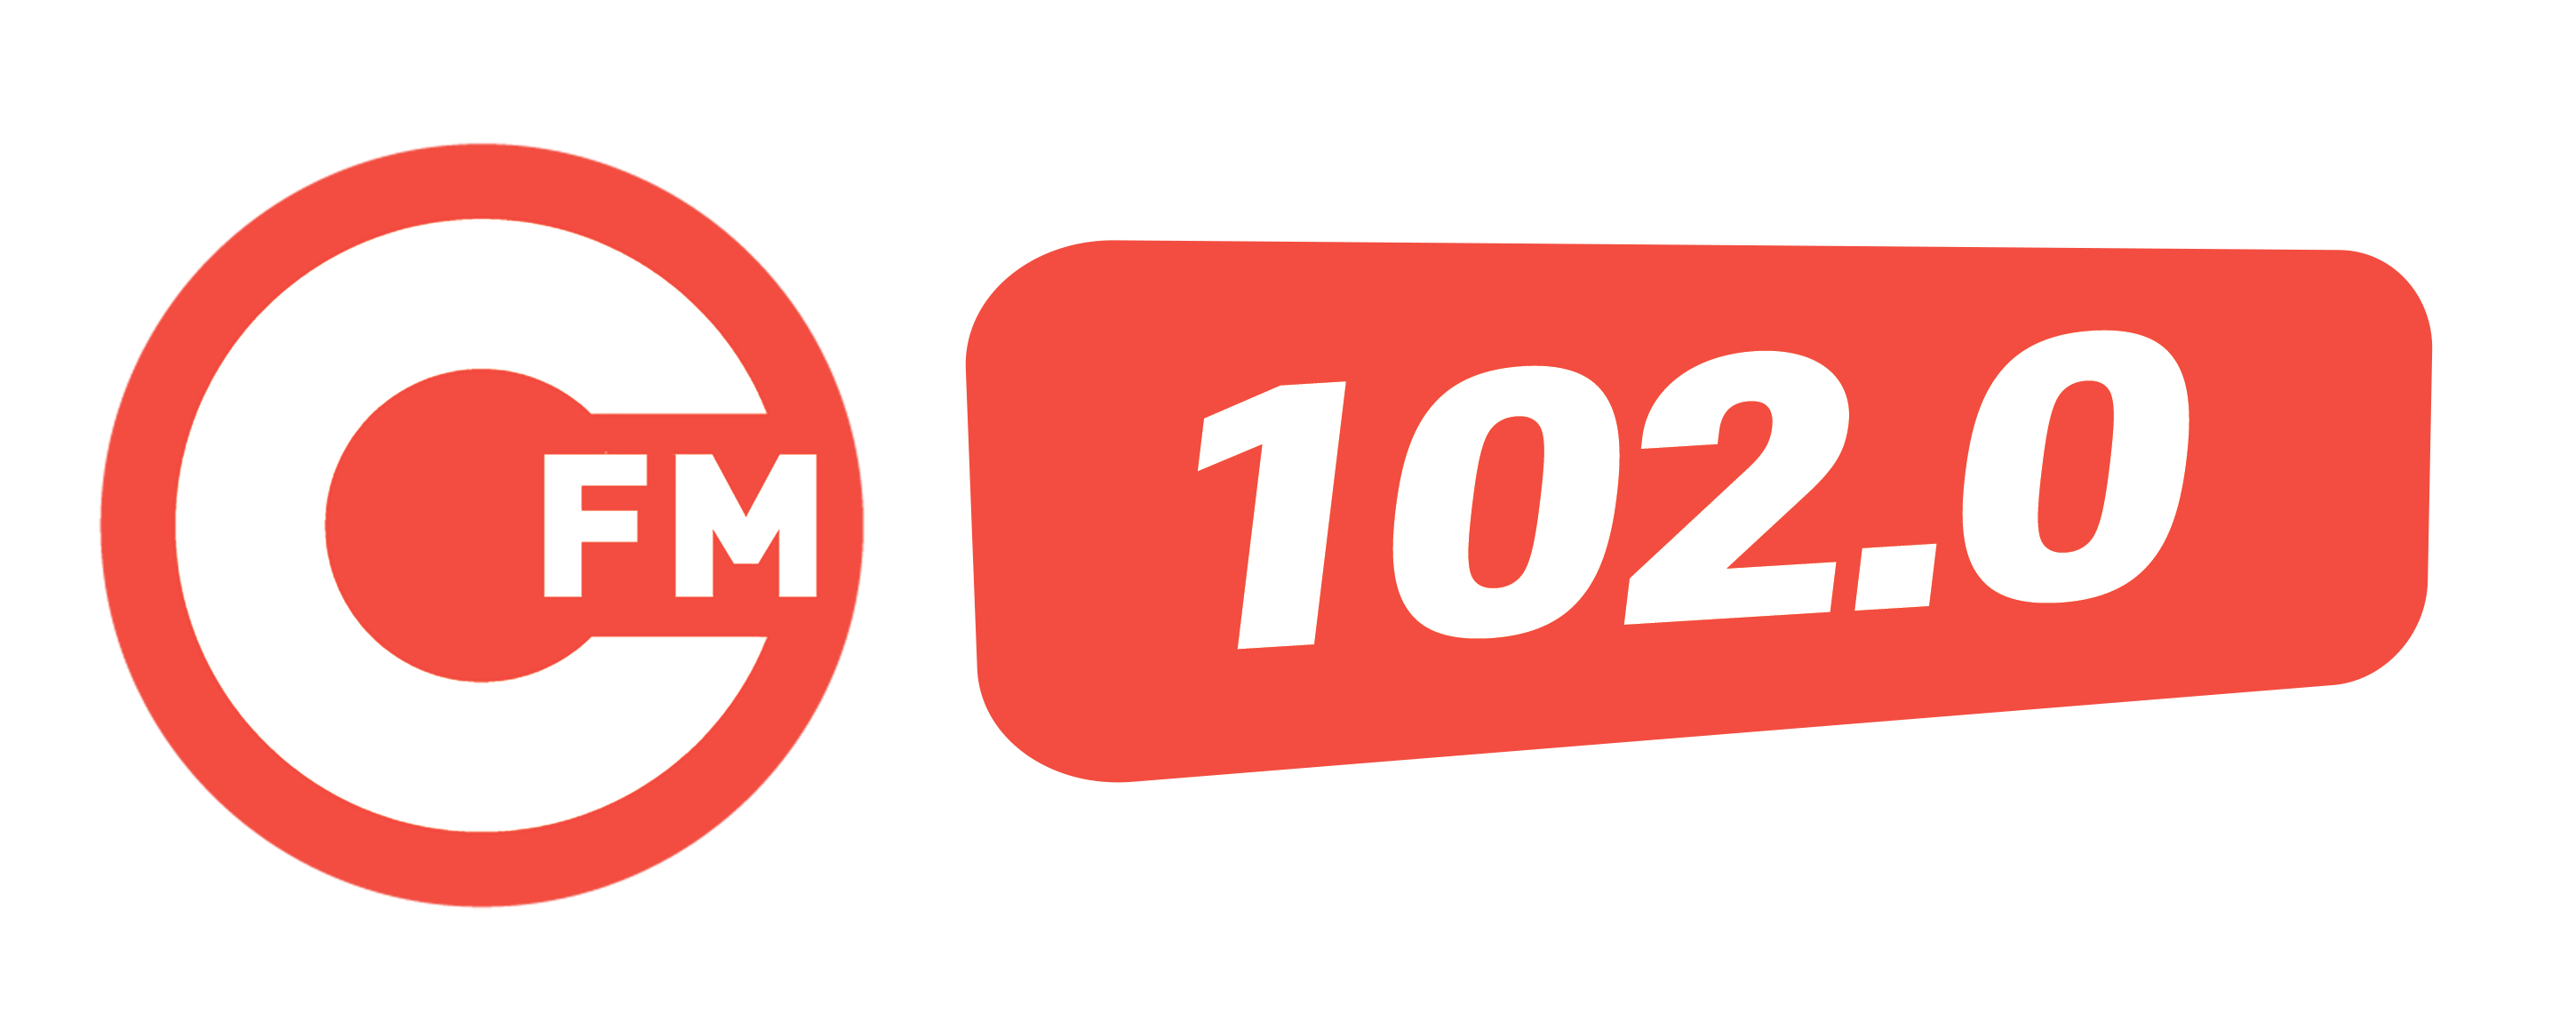 Севастополь 102 FM, радиостанция, г. Севастополь